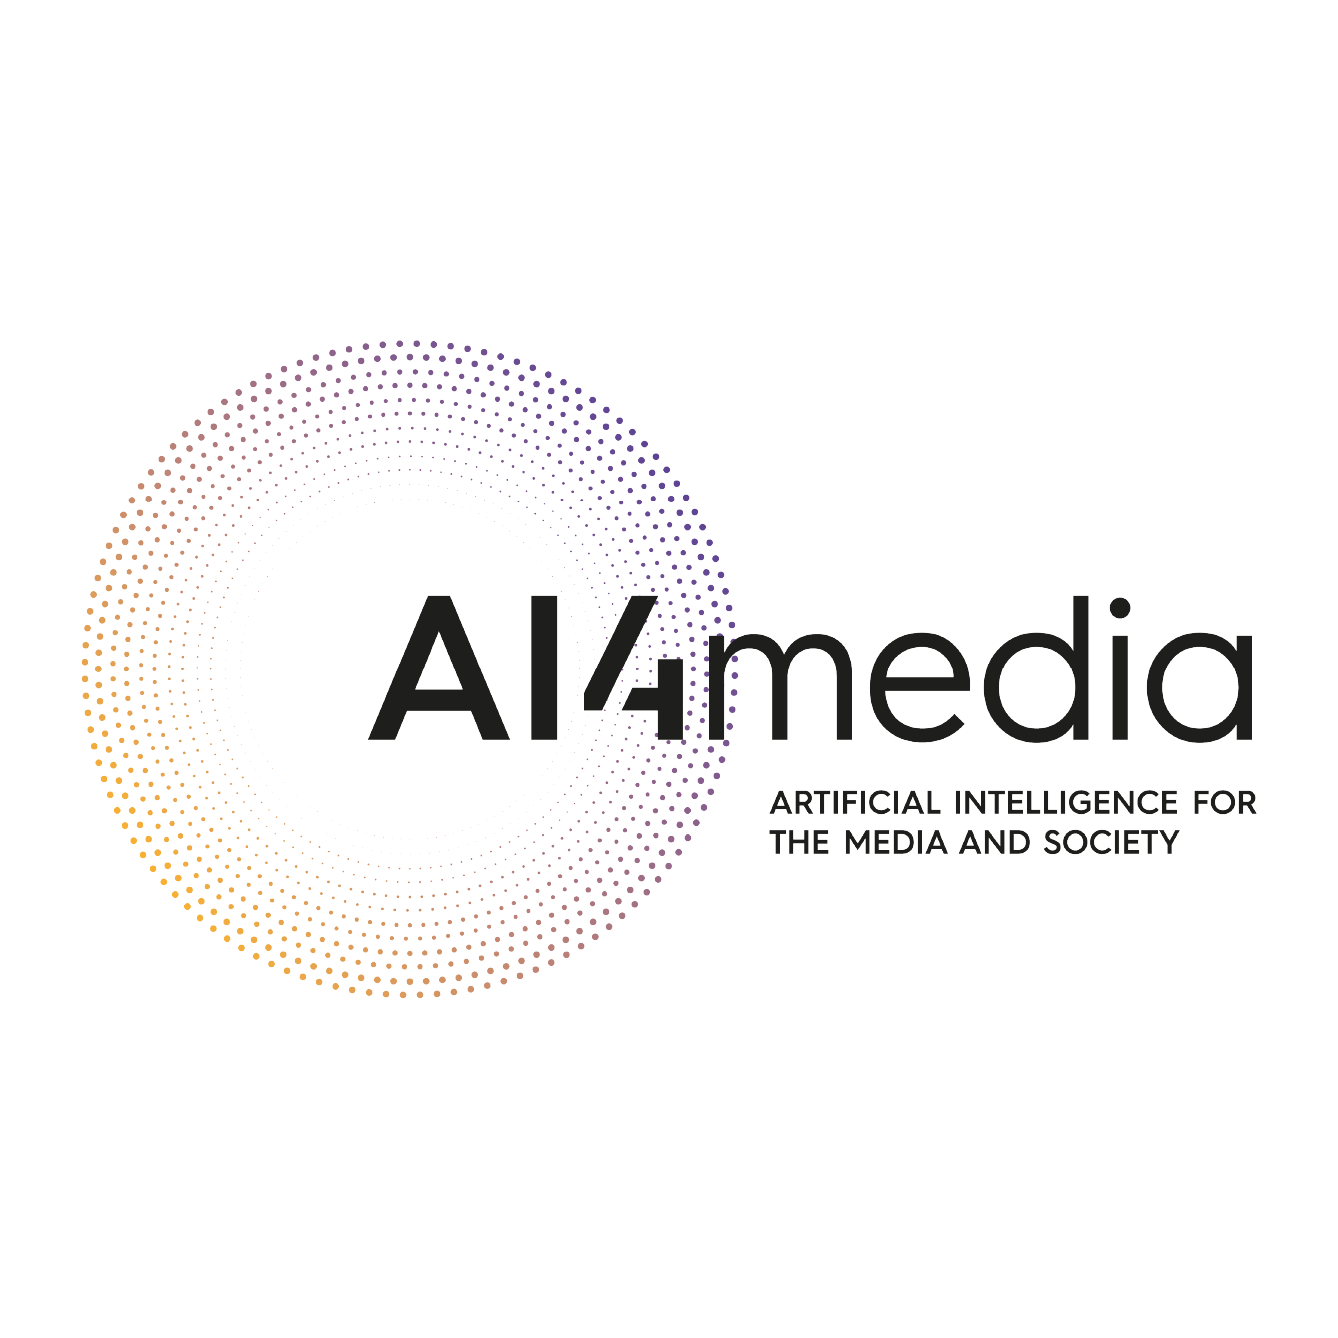 AI4Media